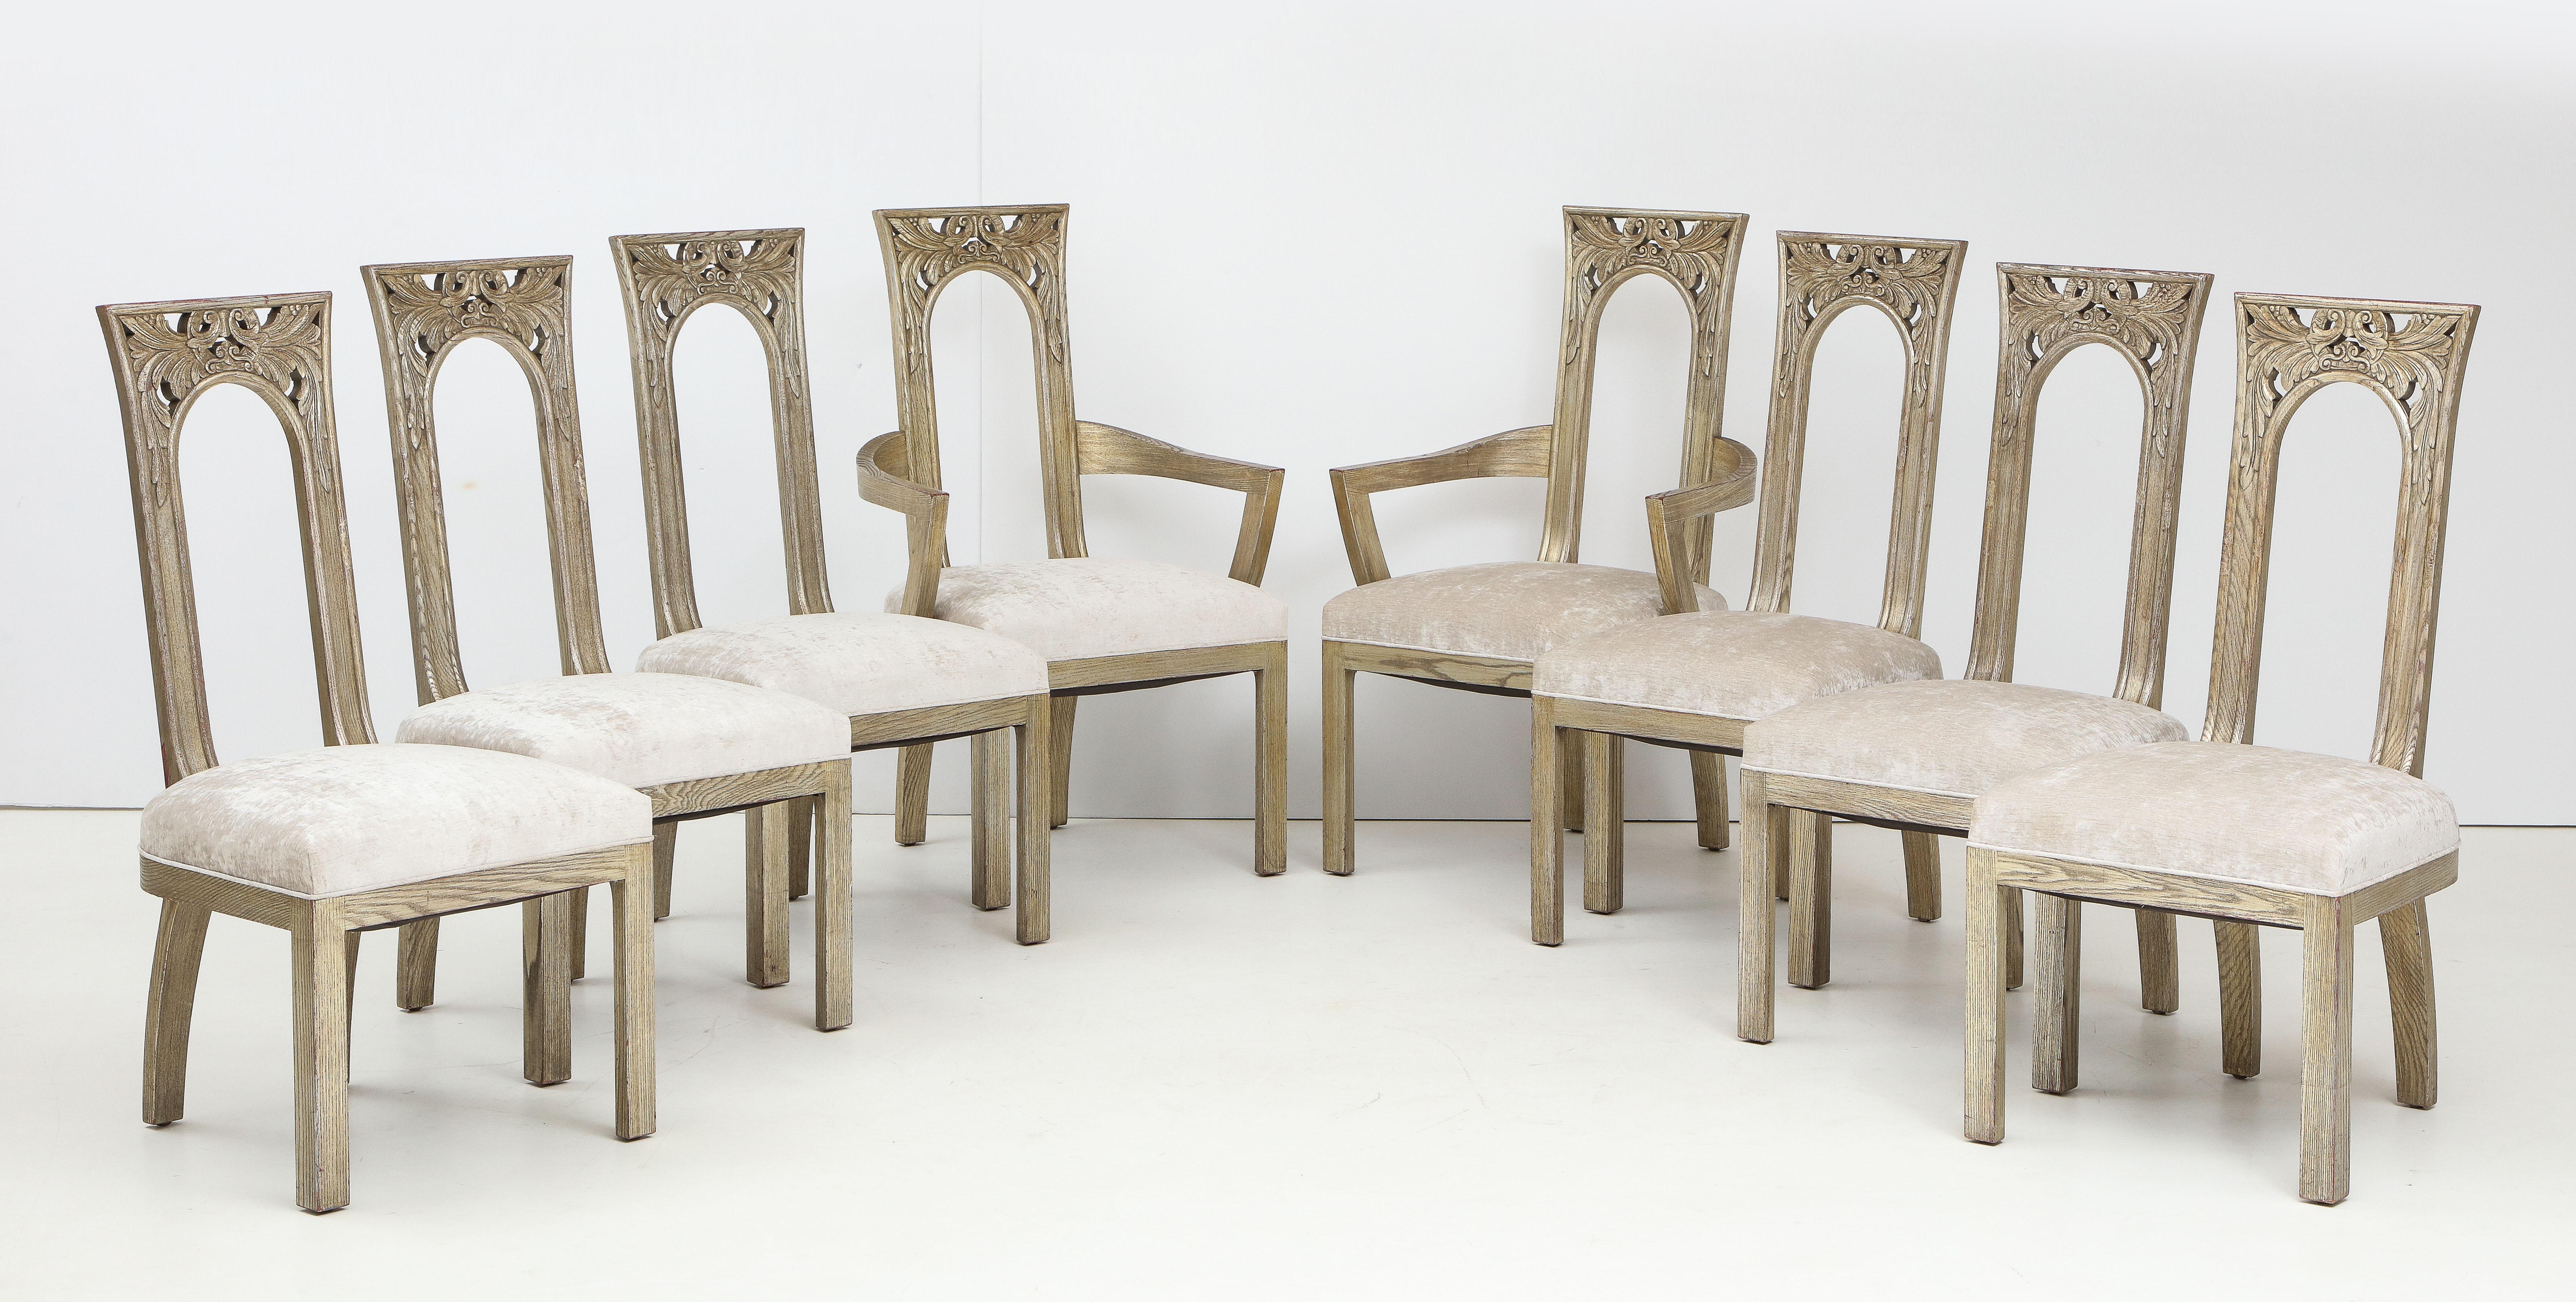 Ensemble de huit chaises de salle à manger d'influence Art Déco par James Mont
Les chaises magnifiquement sculptées ont la finition originale en feuilles d'argent qui est en excellent état avec une usure minimale et elles ont été nouvellement